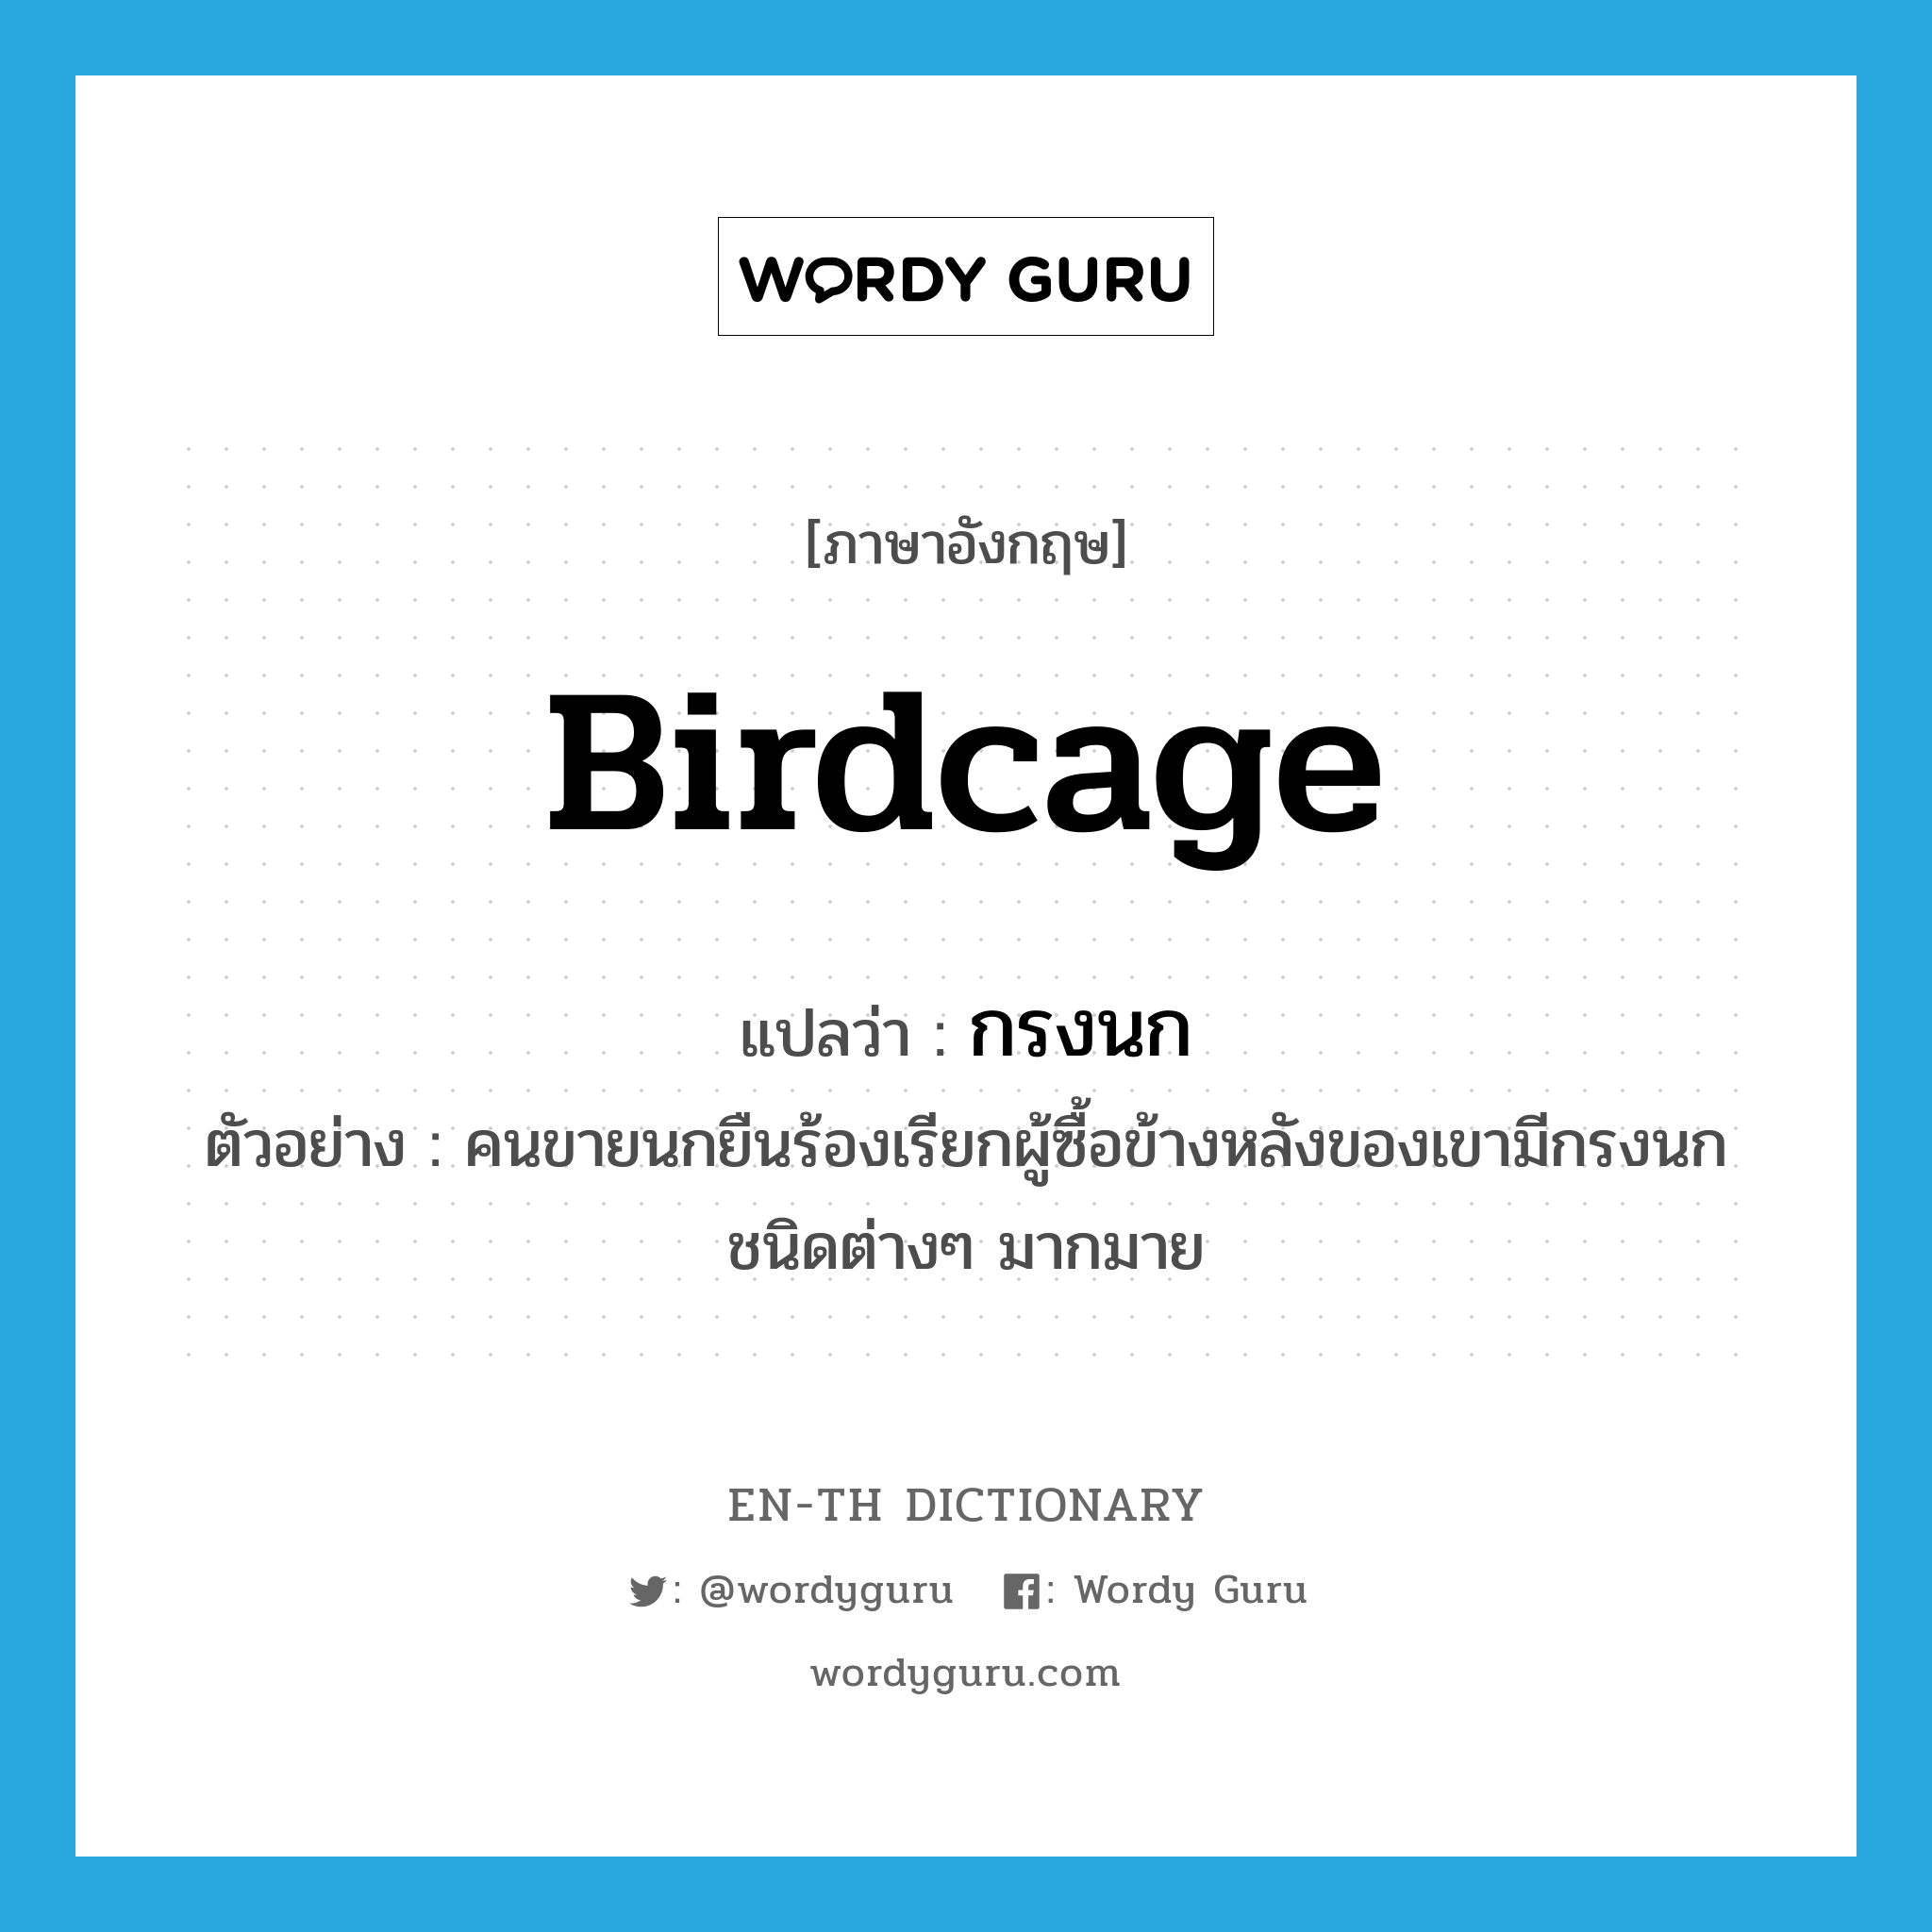 birdcage แปลว่า?, คำศัพท์ภาษาอังกฤษ birdcage แปลว่า กรงนก ประเภท N ตัวอย่าง คนขายนกยืนร้องเรียกผู้ซื้อข้างหลังของเขามีกรงนกชนิดต่างๆ มากมาย หมวด N